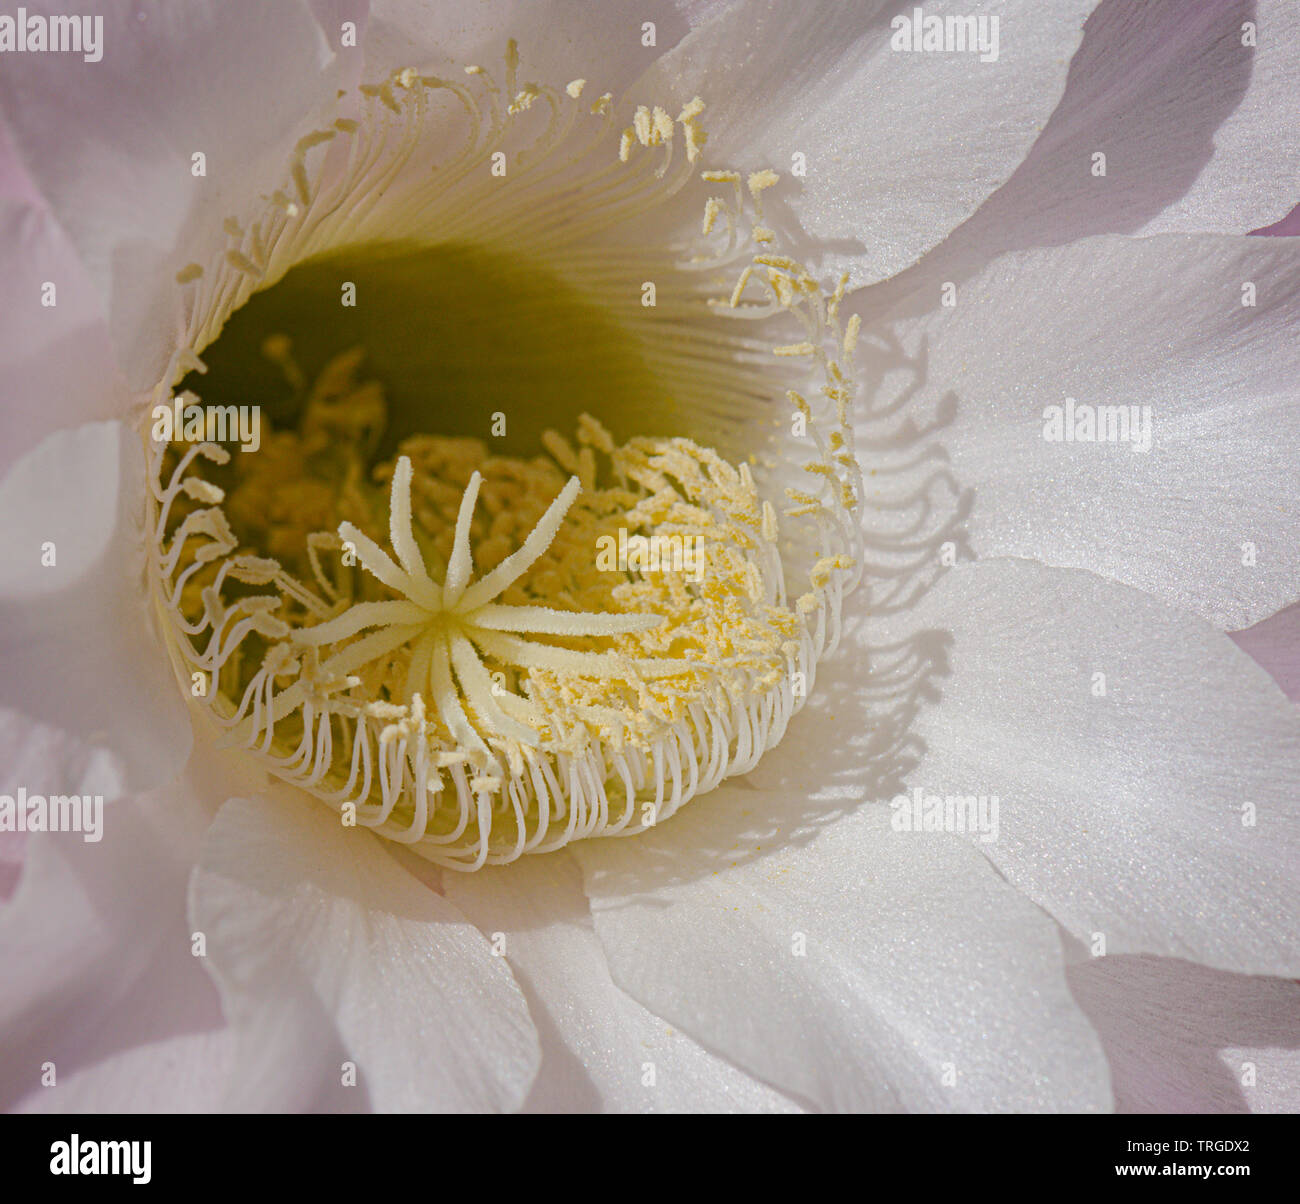 Gros plan de l'centre d'un white night blooming echinopsis fleur de cactus montrant le stigmate en forme d'étoile Banque D'Images